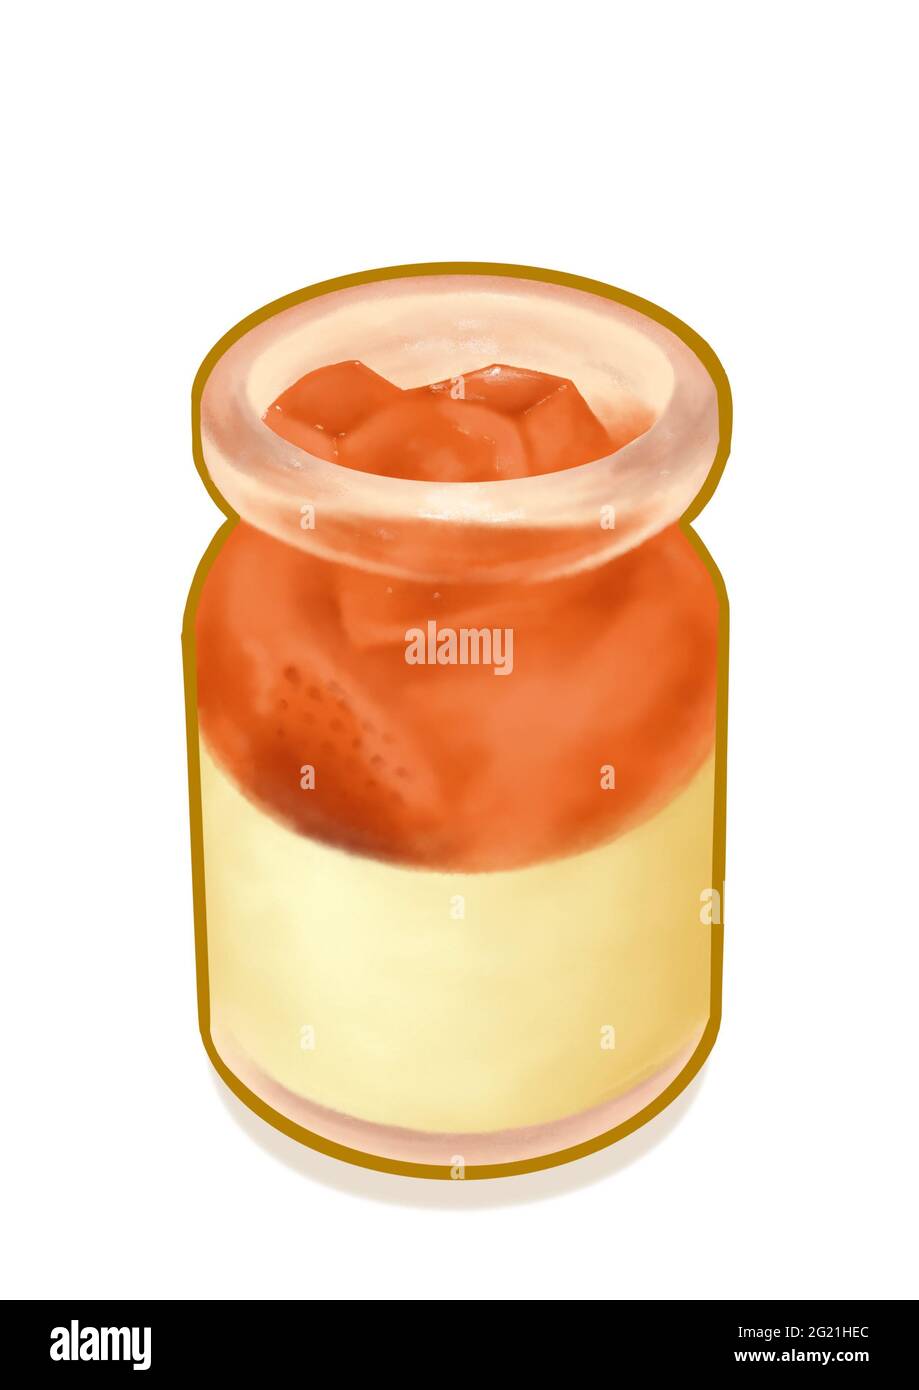 Strawberry panna cotta, un dipinto digitale di budino di pannacotta con fragole che si constano in piccole bottiglie di vetro raster illustrazione 3D isolato su wh Foto Stock